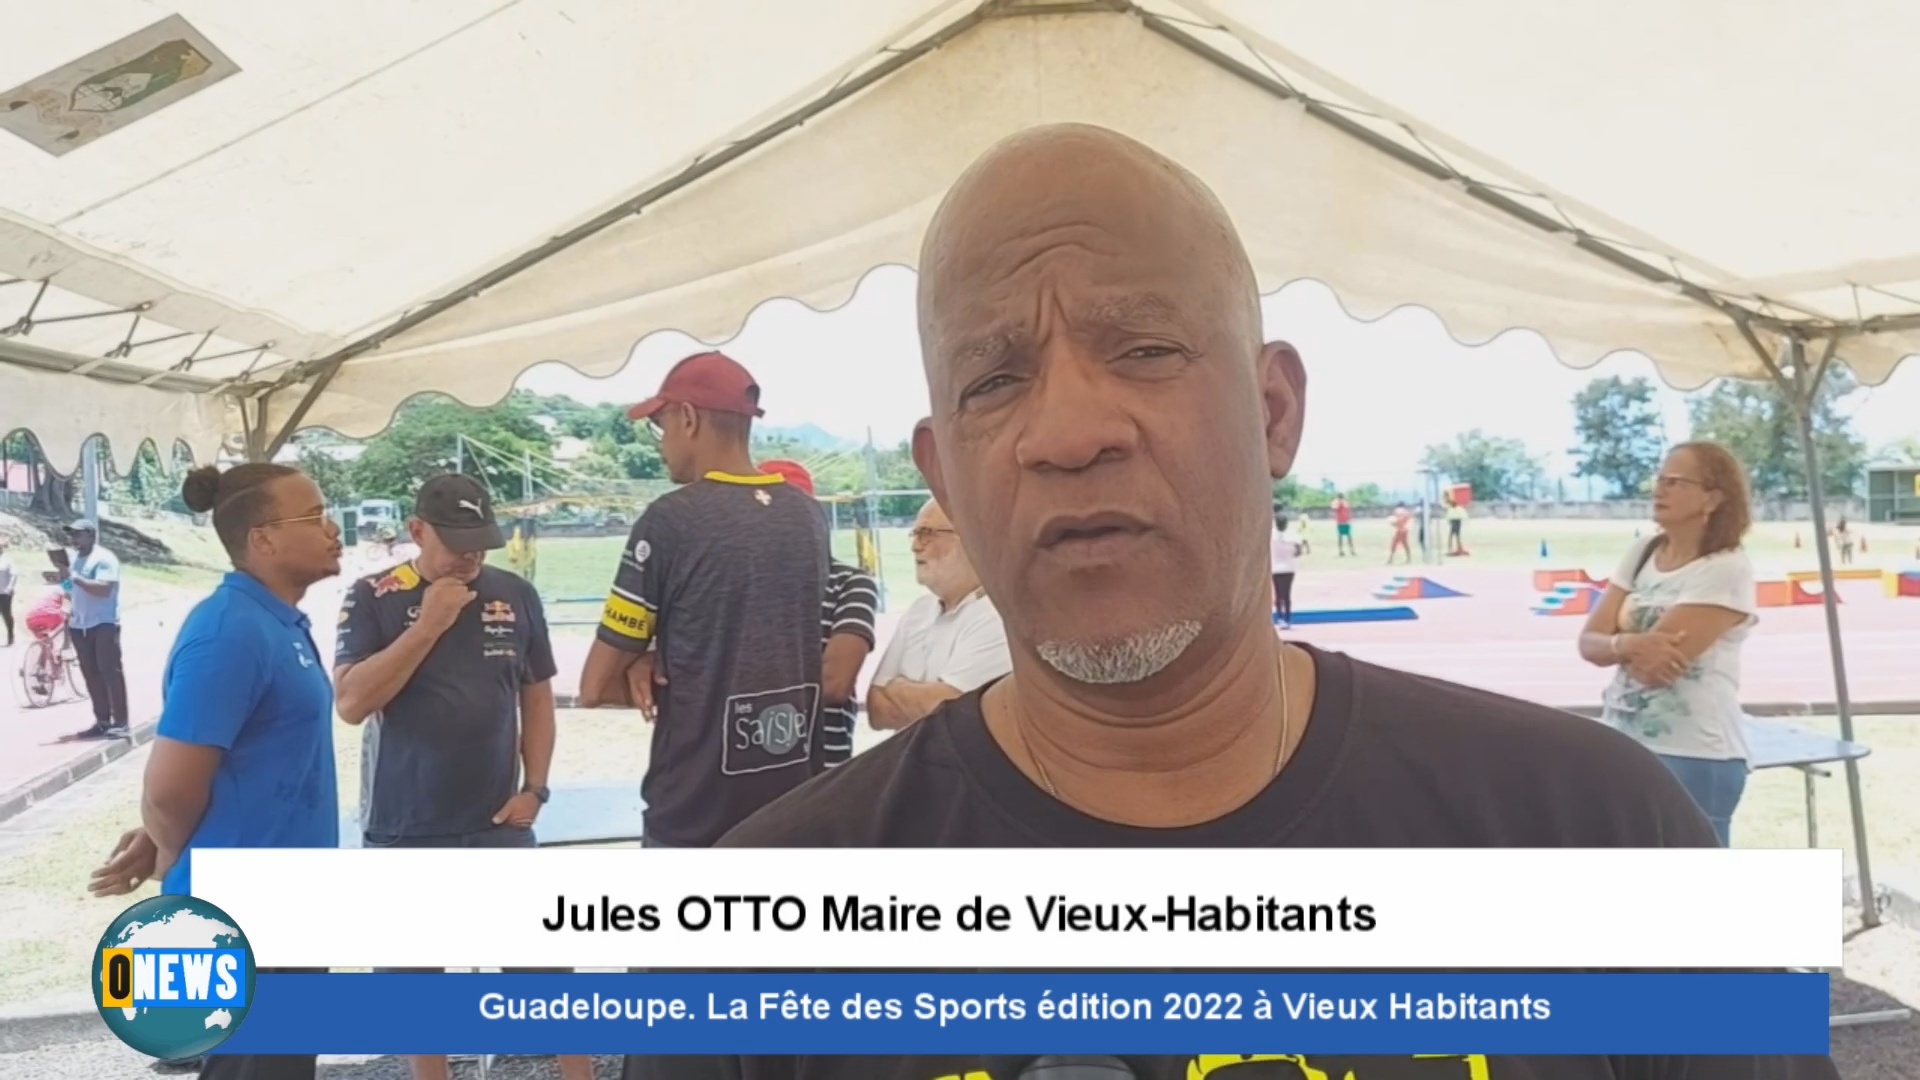 [Vidéo] Guadeloupe. La Fête des Sports à Vieux Habitants édition 2022